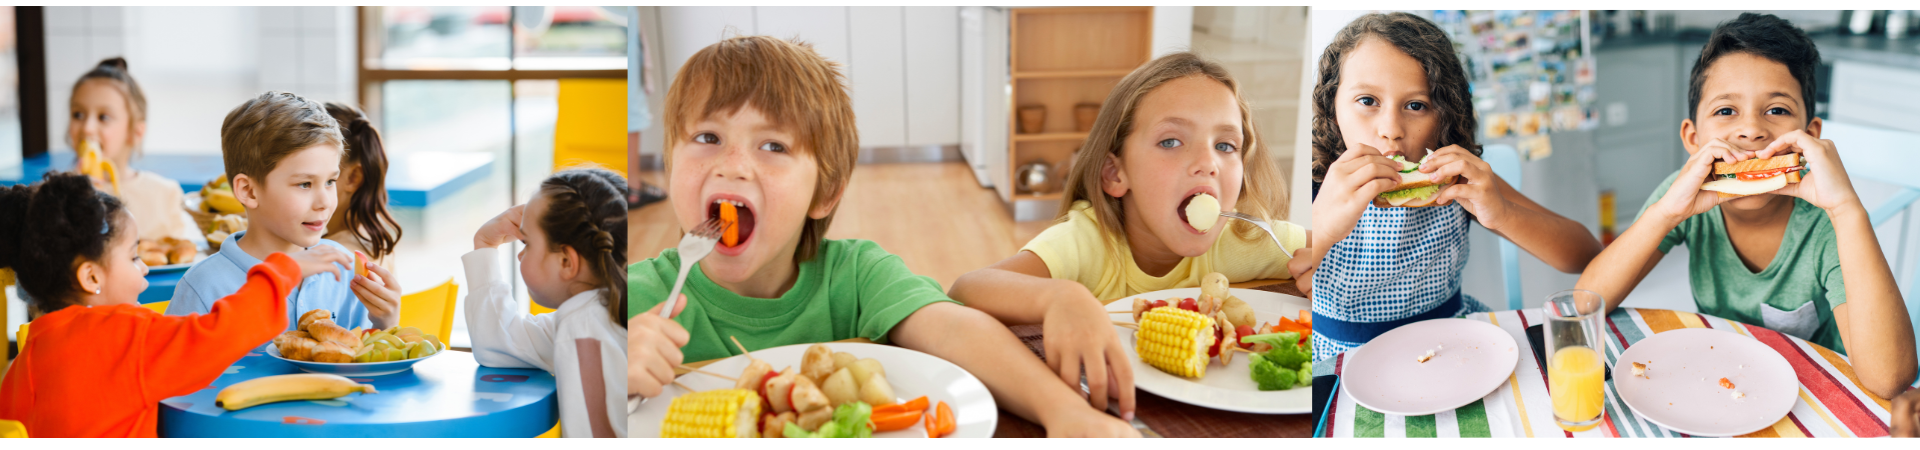 תזונה בריאה לילדים - איך מתכוננים לחזרה לשיגרה